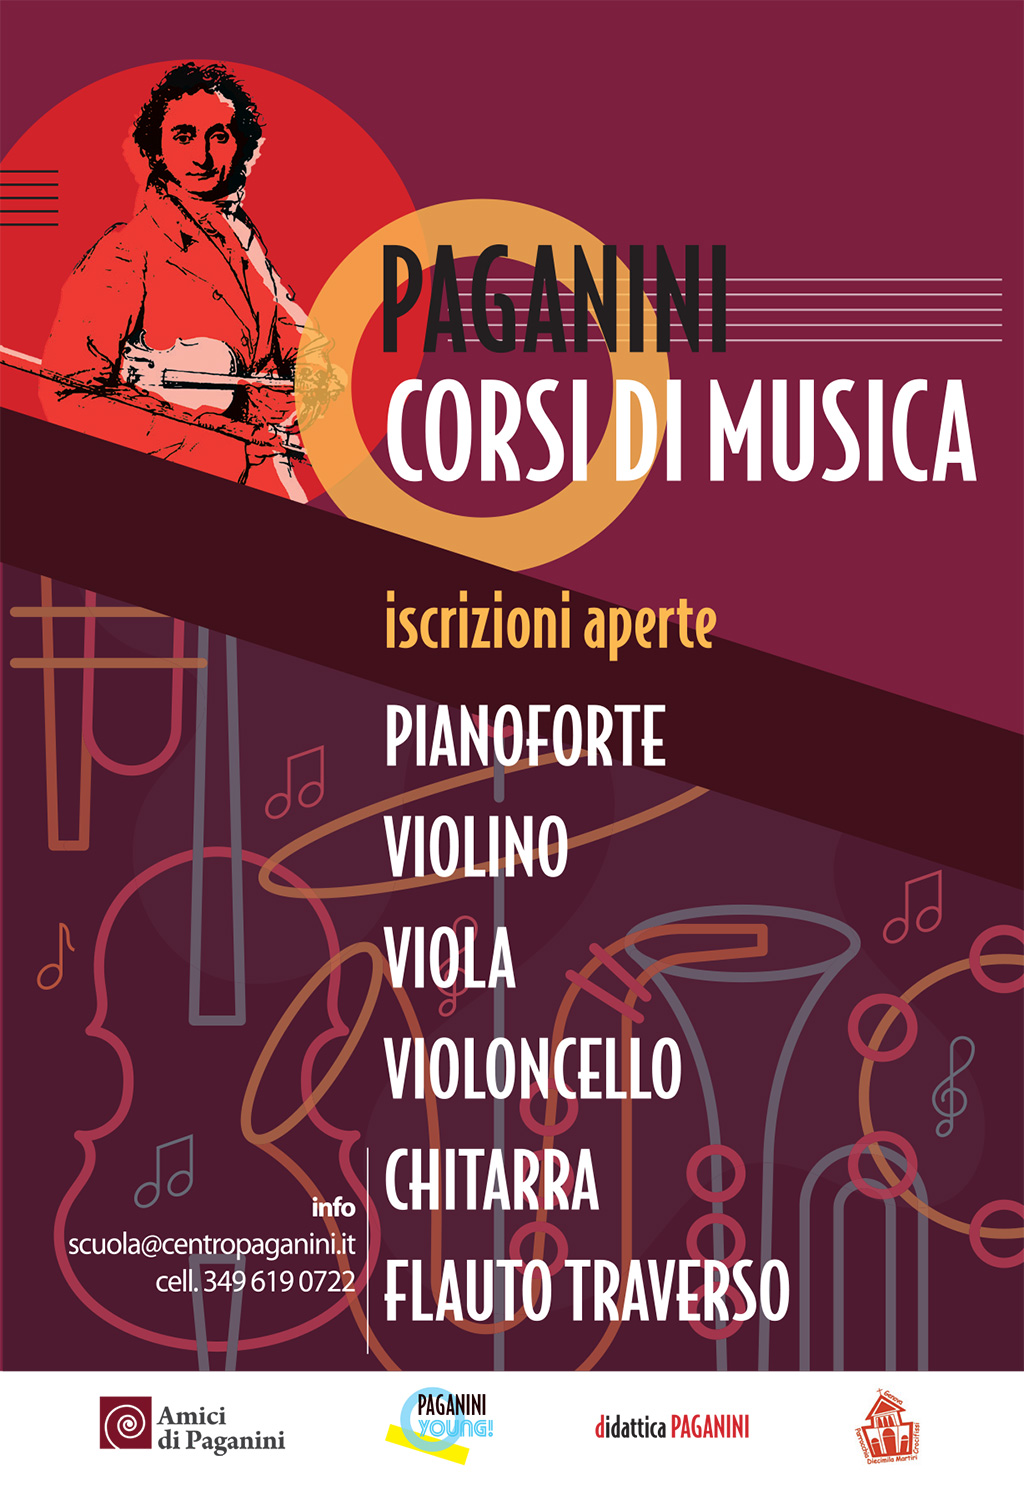 Centro Paganini - Corsi di musica - Locandina